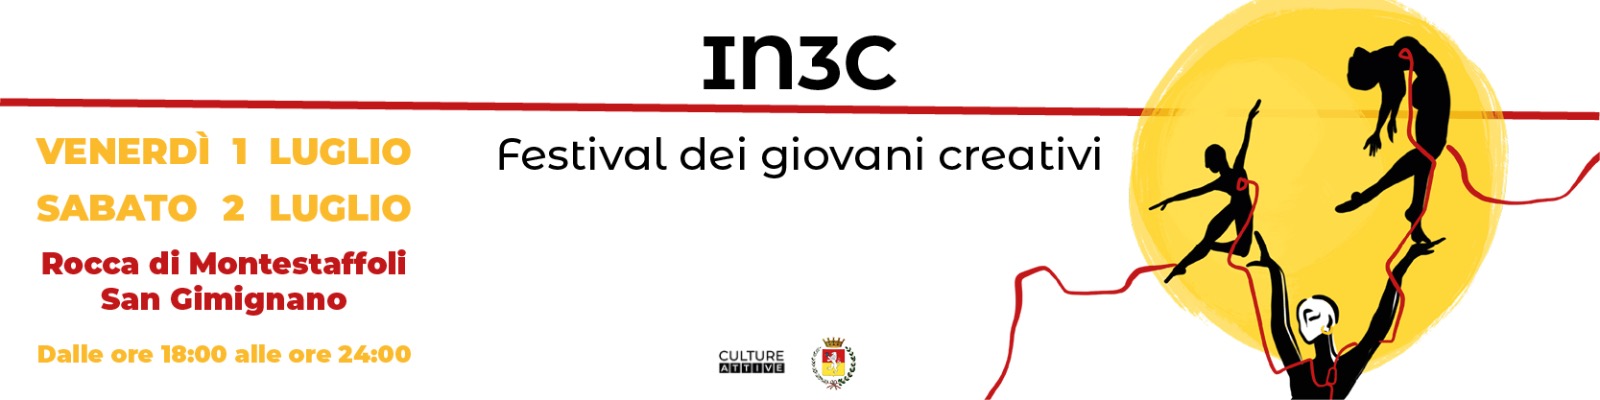 IN3C - Festival dei giovani creativi 1 e 2 luglio 2022